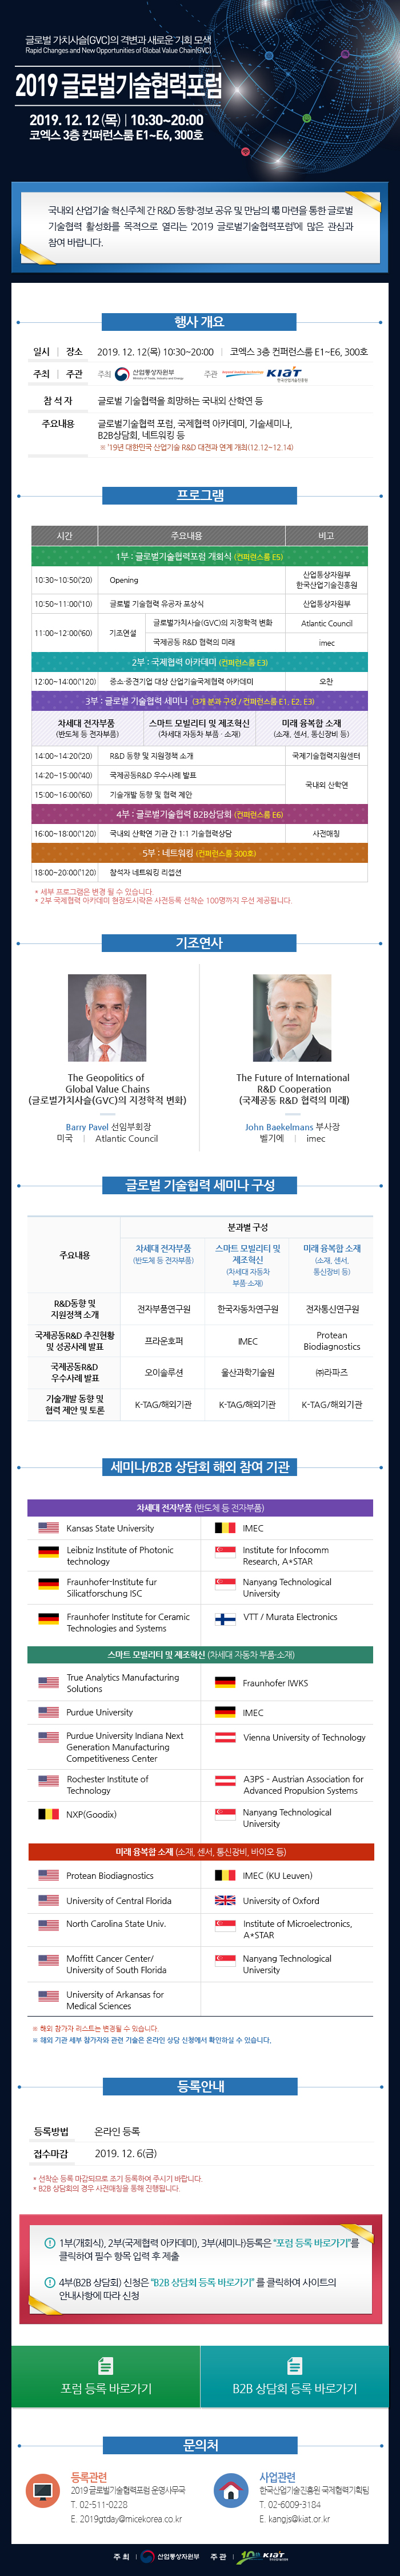 2019 글로벌기술협력포럼_2차 EDM 최종.jpg